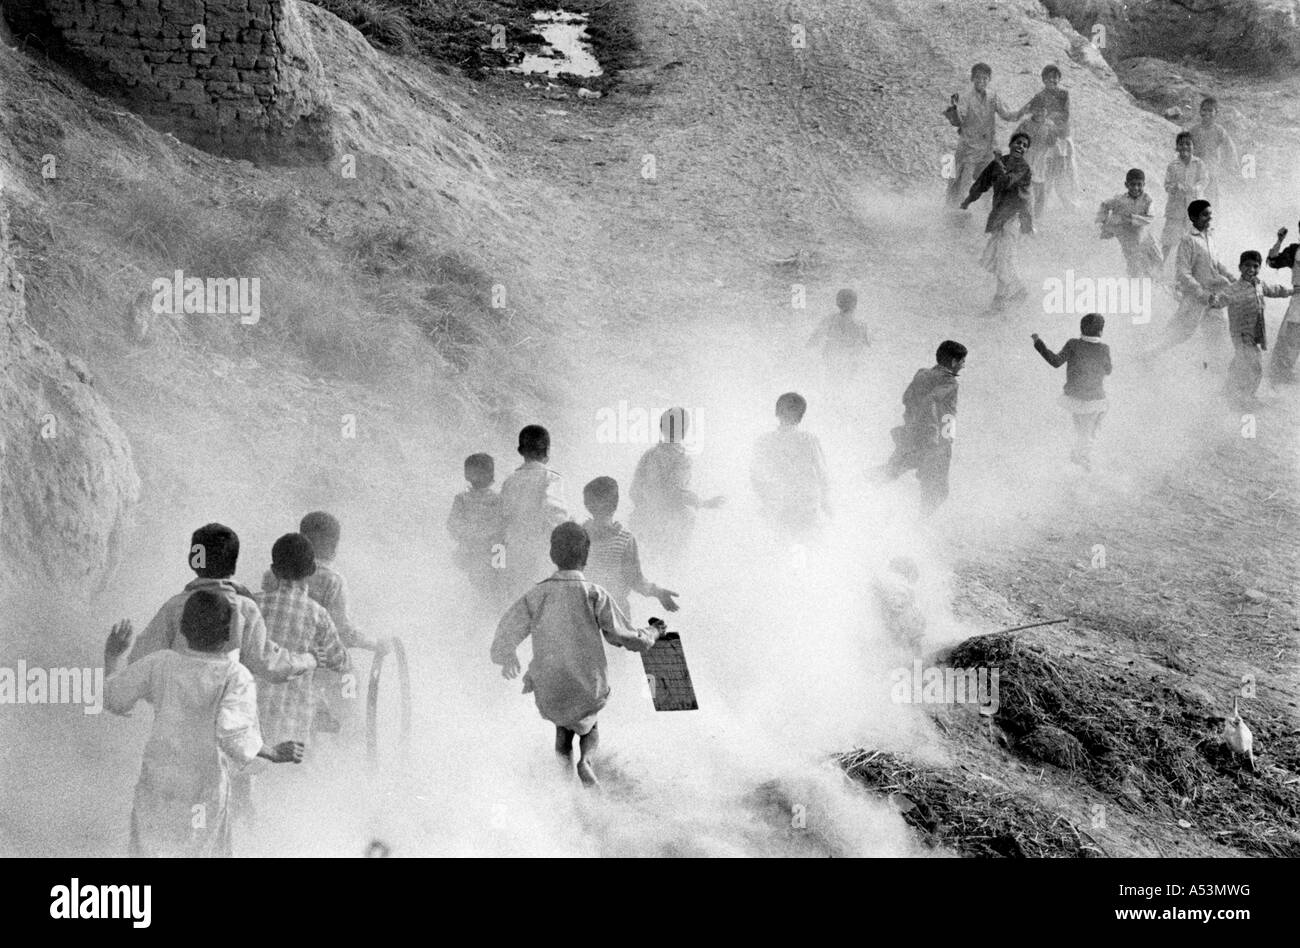 Painet ha1465 296 nero e bianco paesaggio boys sollevando la polvere run home school village punjab pakistan paese in via di sviluppo Foto Stock